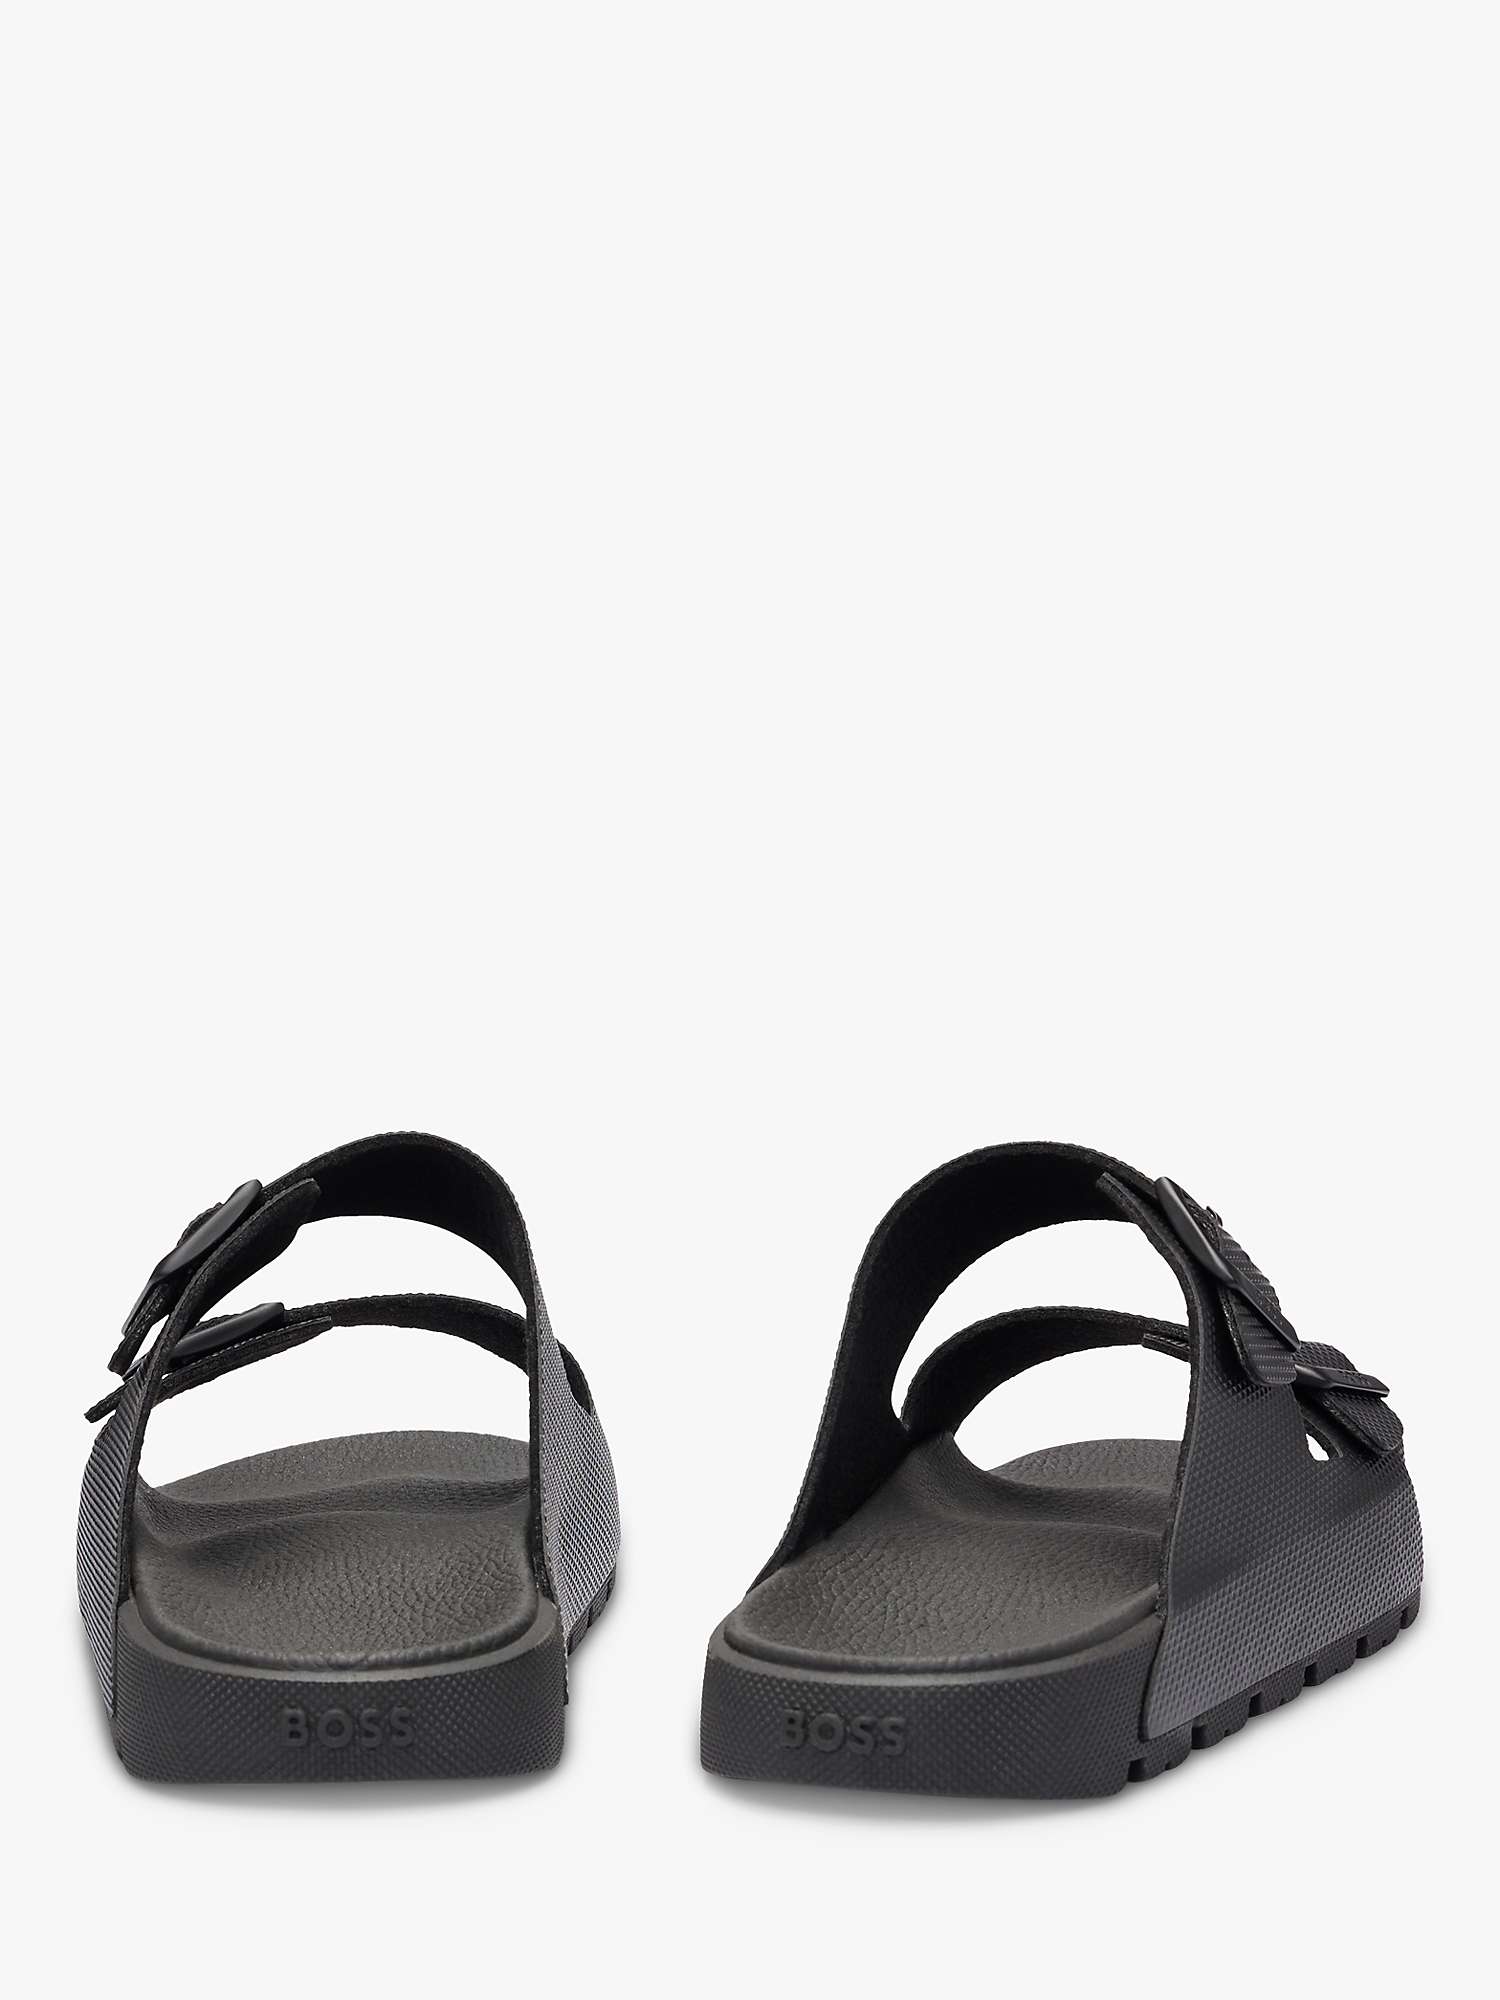 Buy BOSS Surfley Slider Sandals, Black Online at johnlewis.com